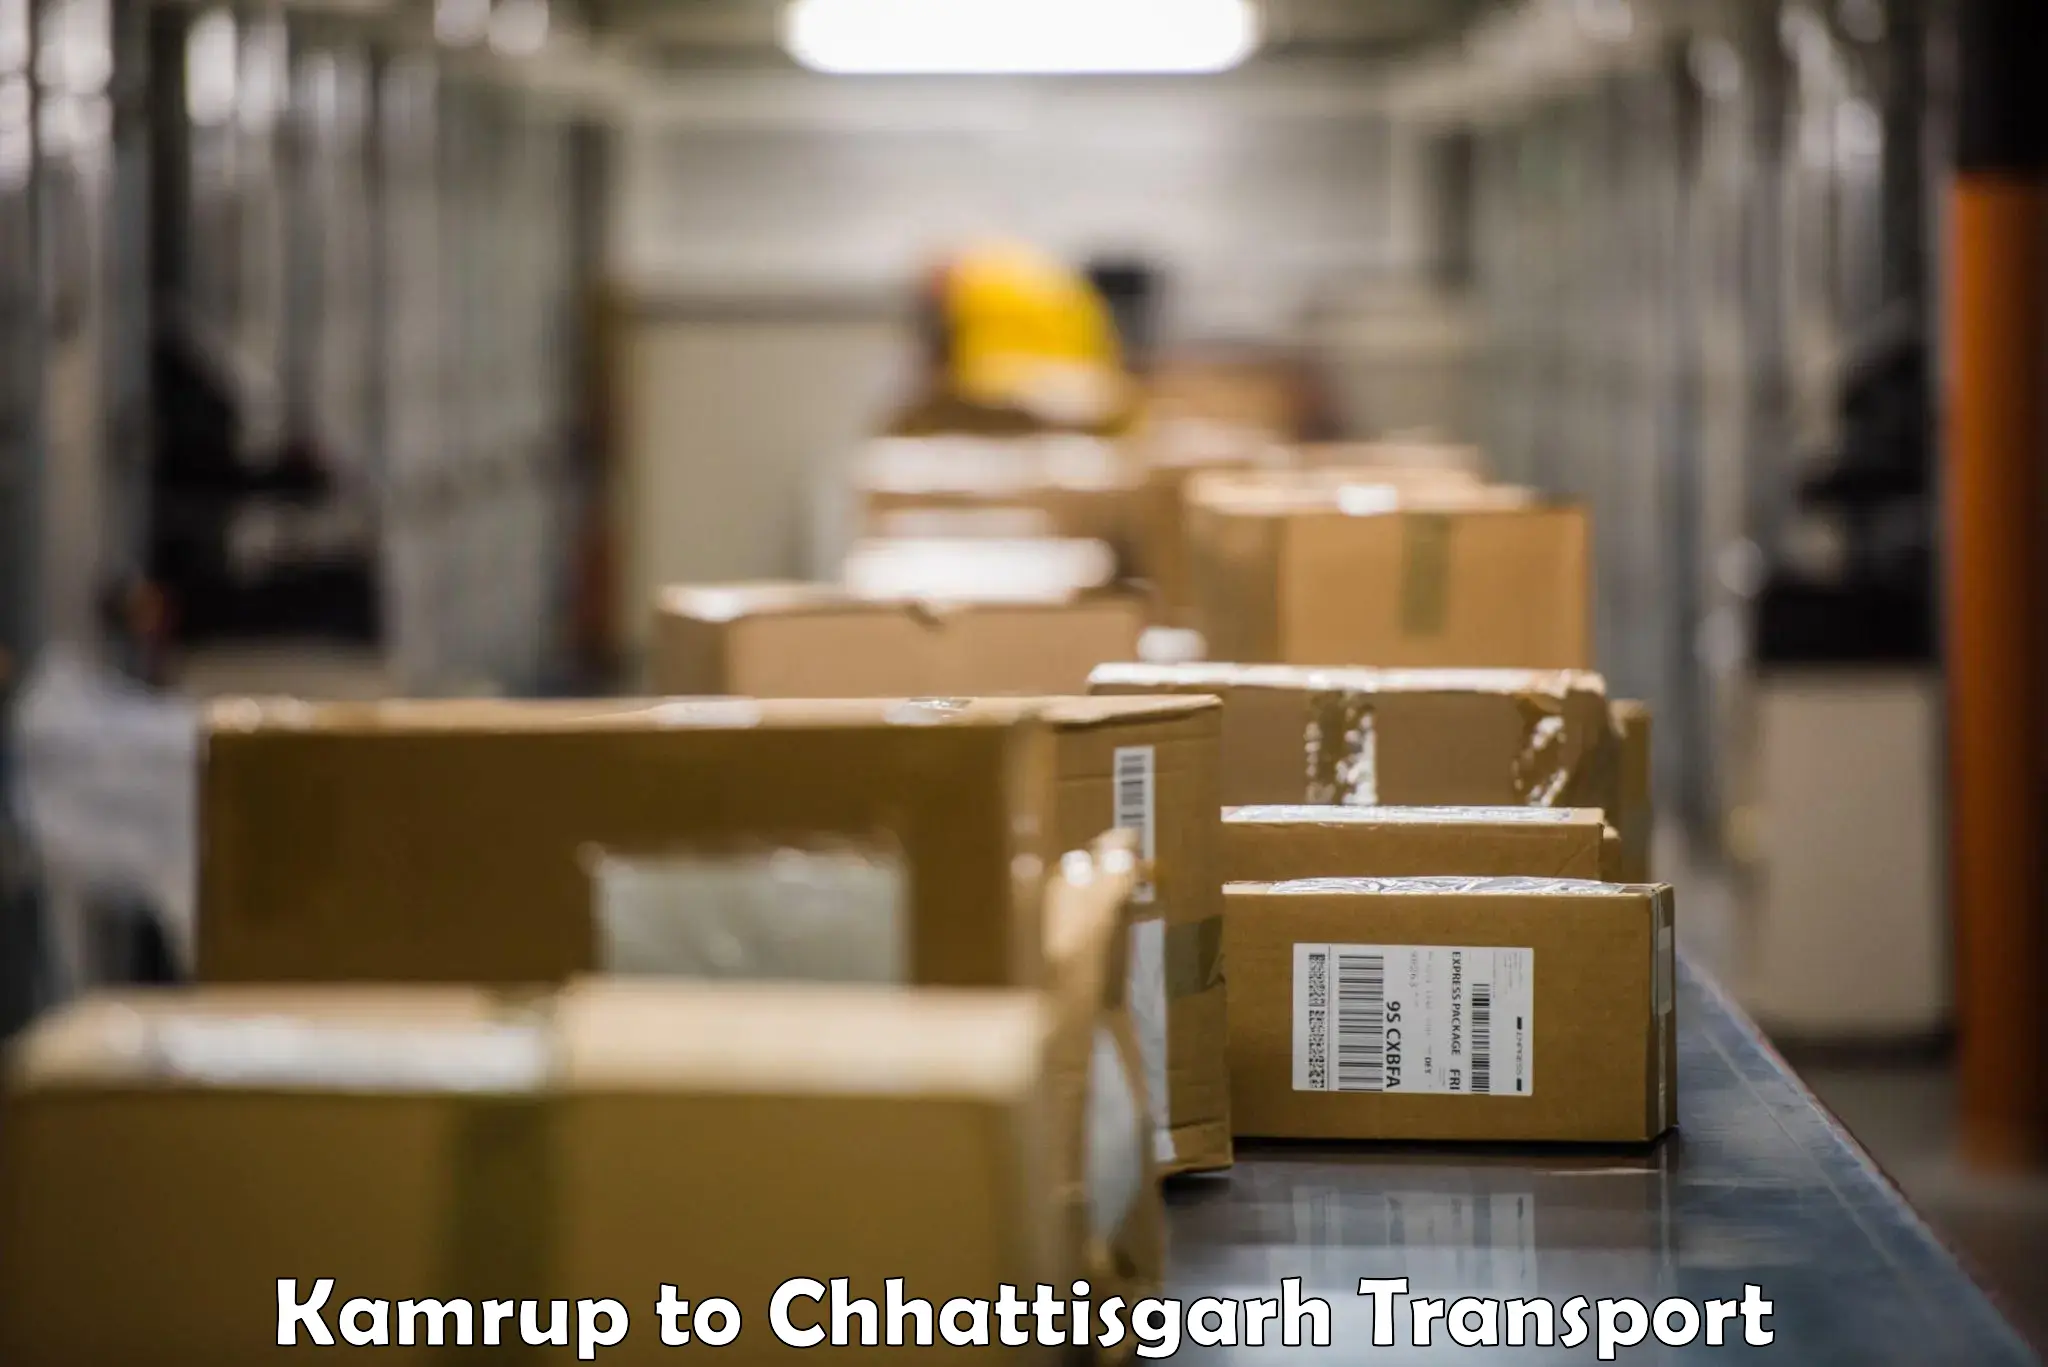 Truck transport companies in India Kamrup to Chirimiri